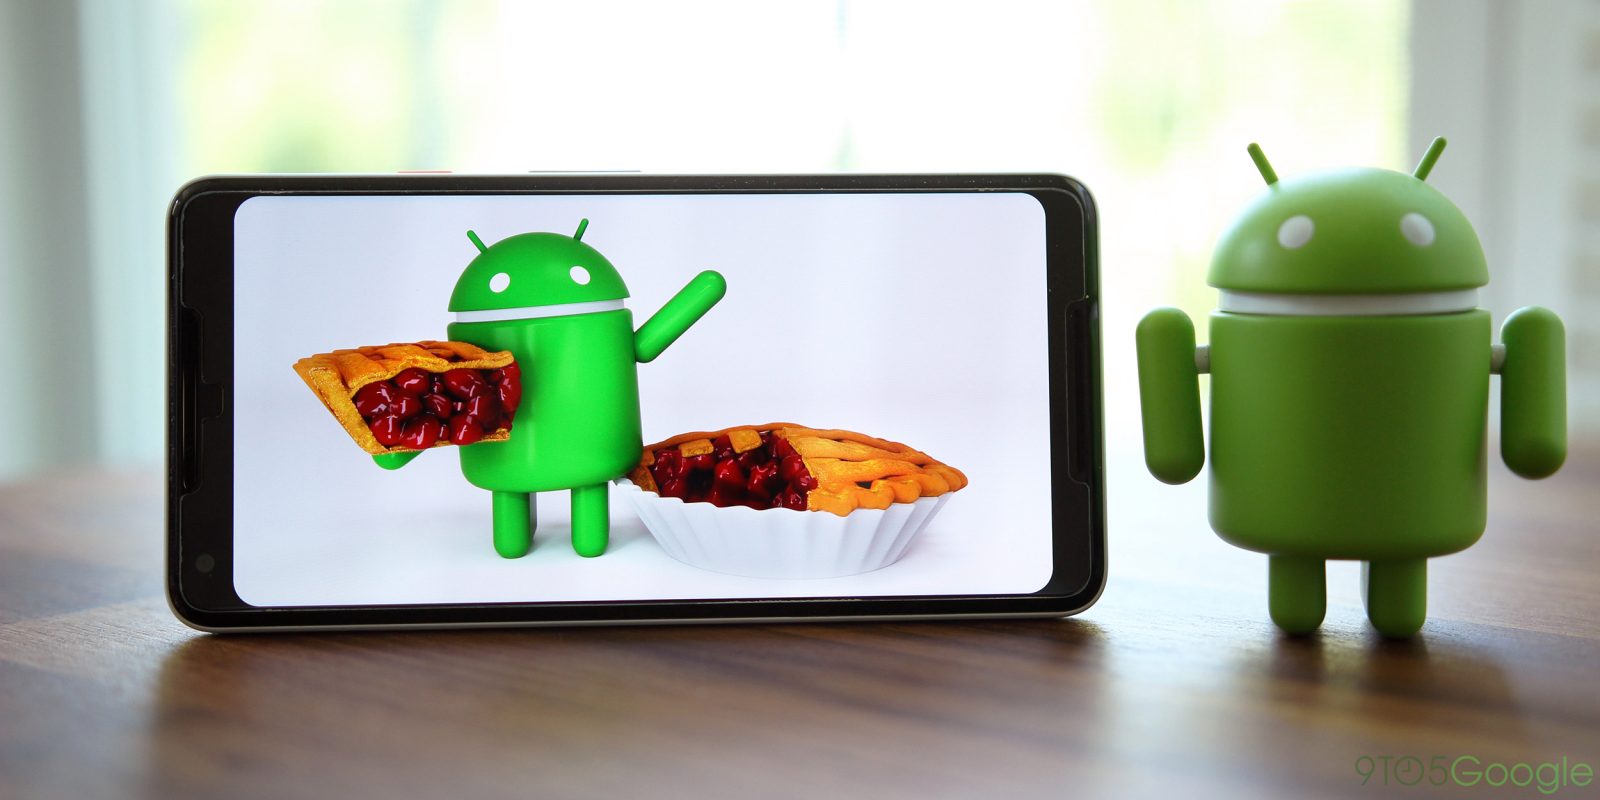 Google Pixel cihazlarına Android Pie nasıl yüklenir?